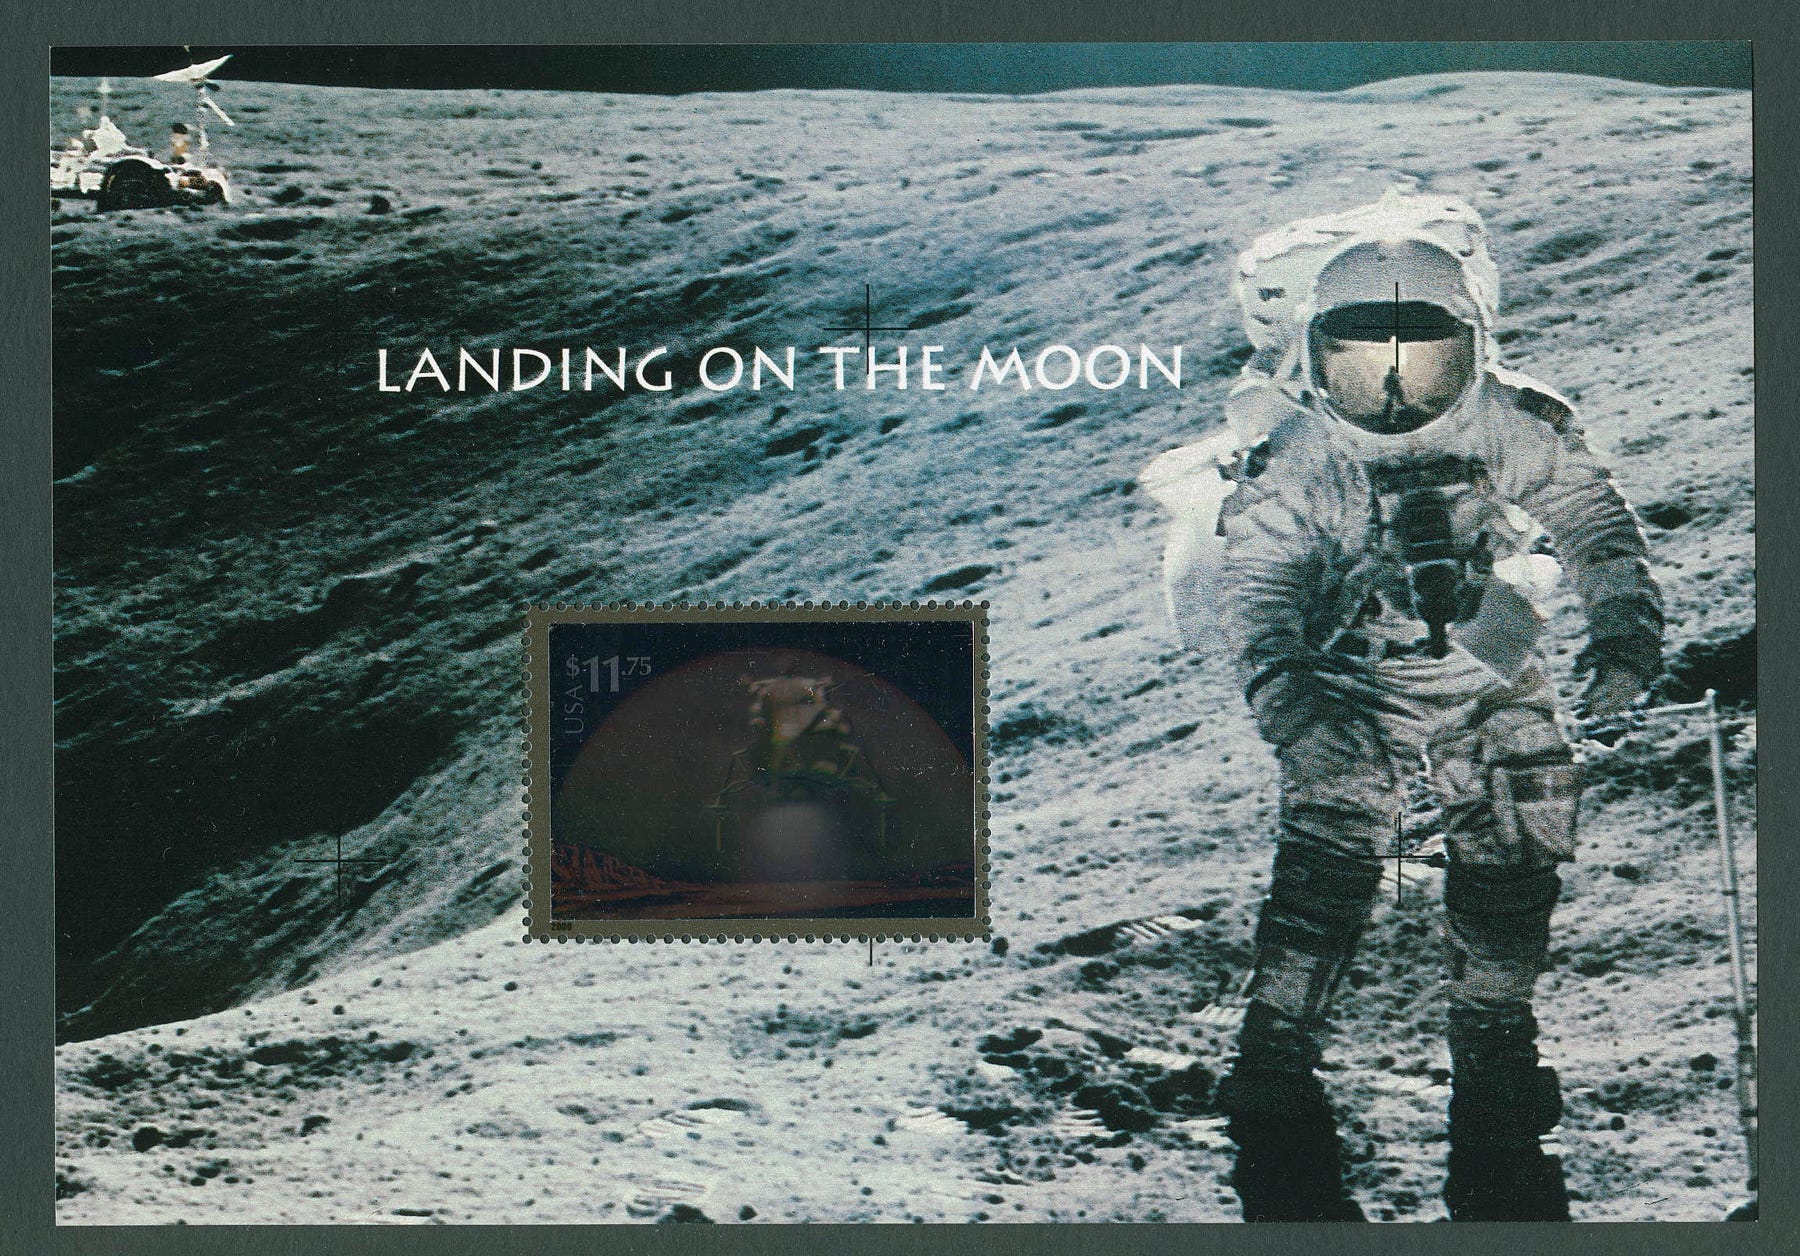 USA 2000 Apollo 16 stamp sheet